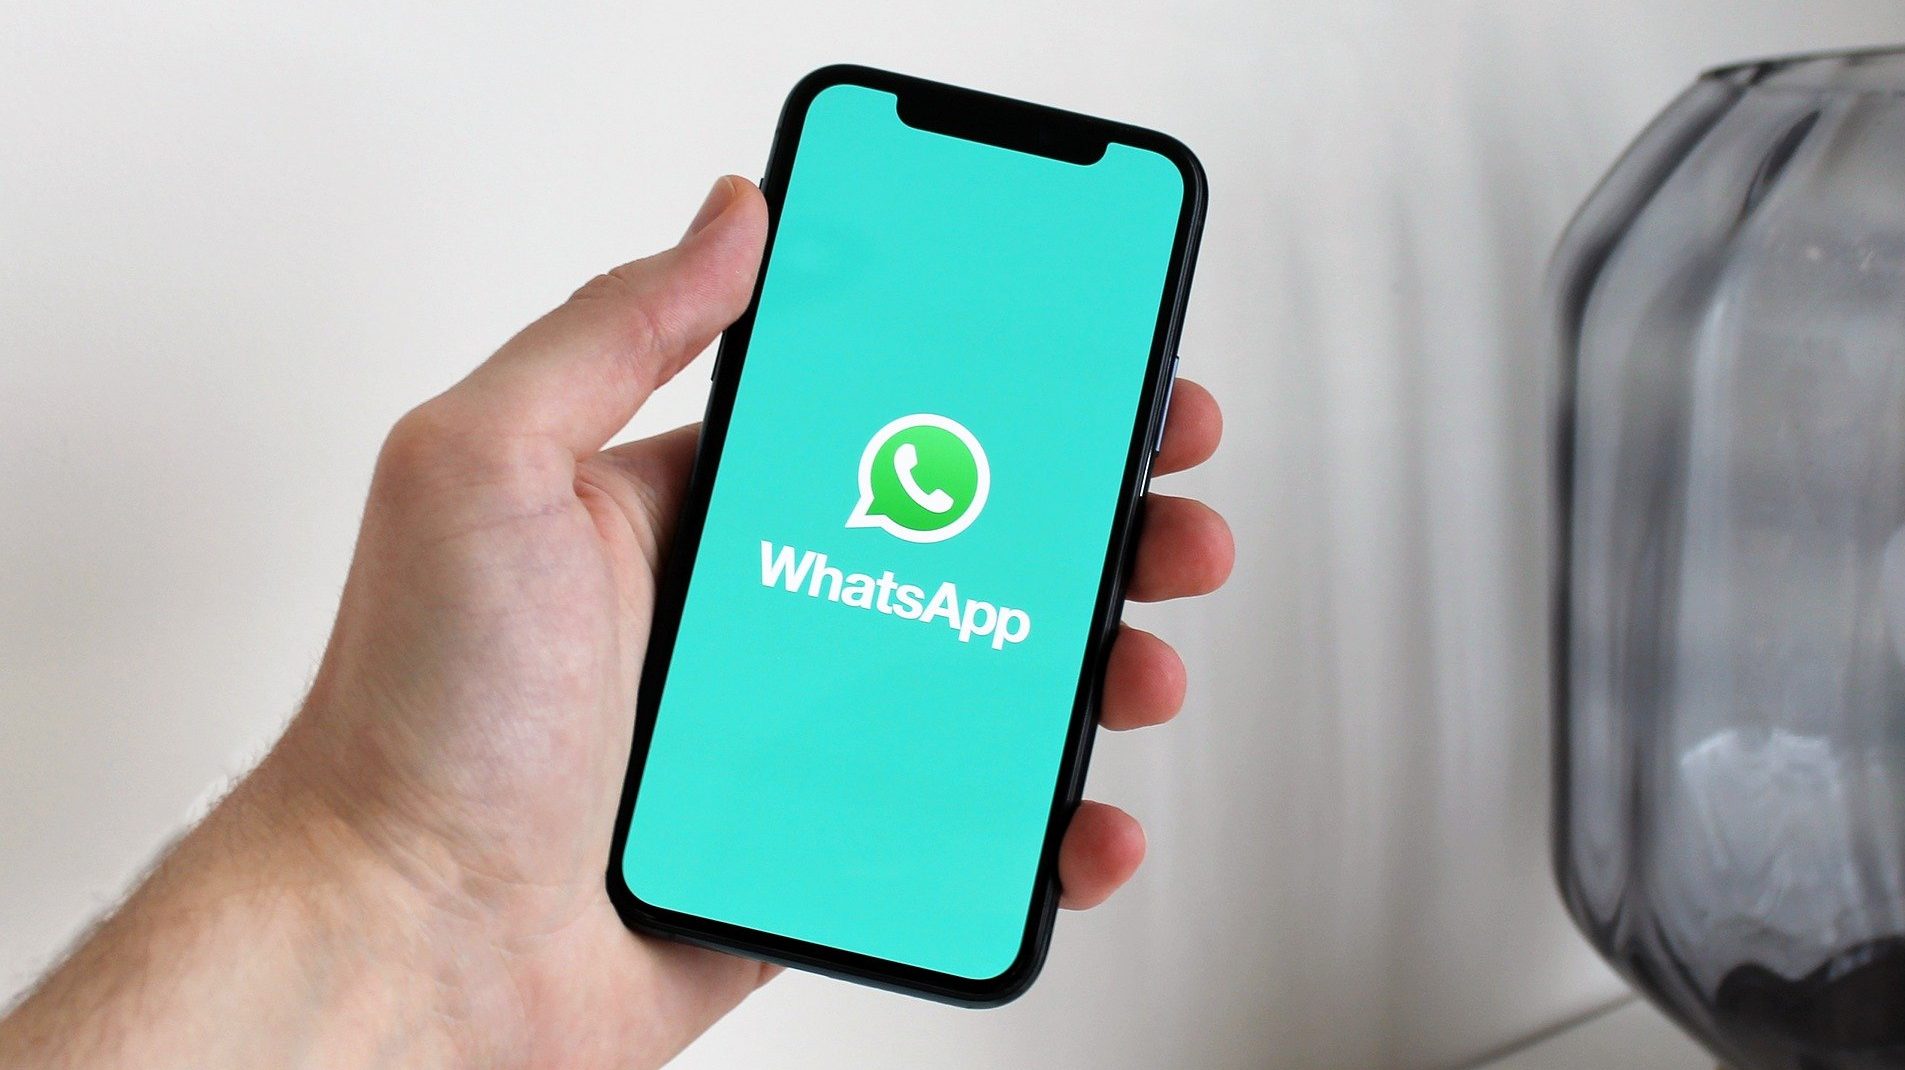 WhatsApp já permite passar informação de iOS para (alguns) Android